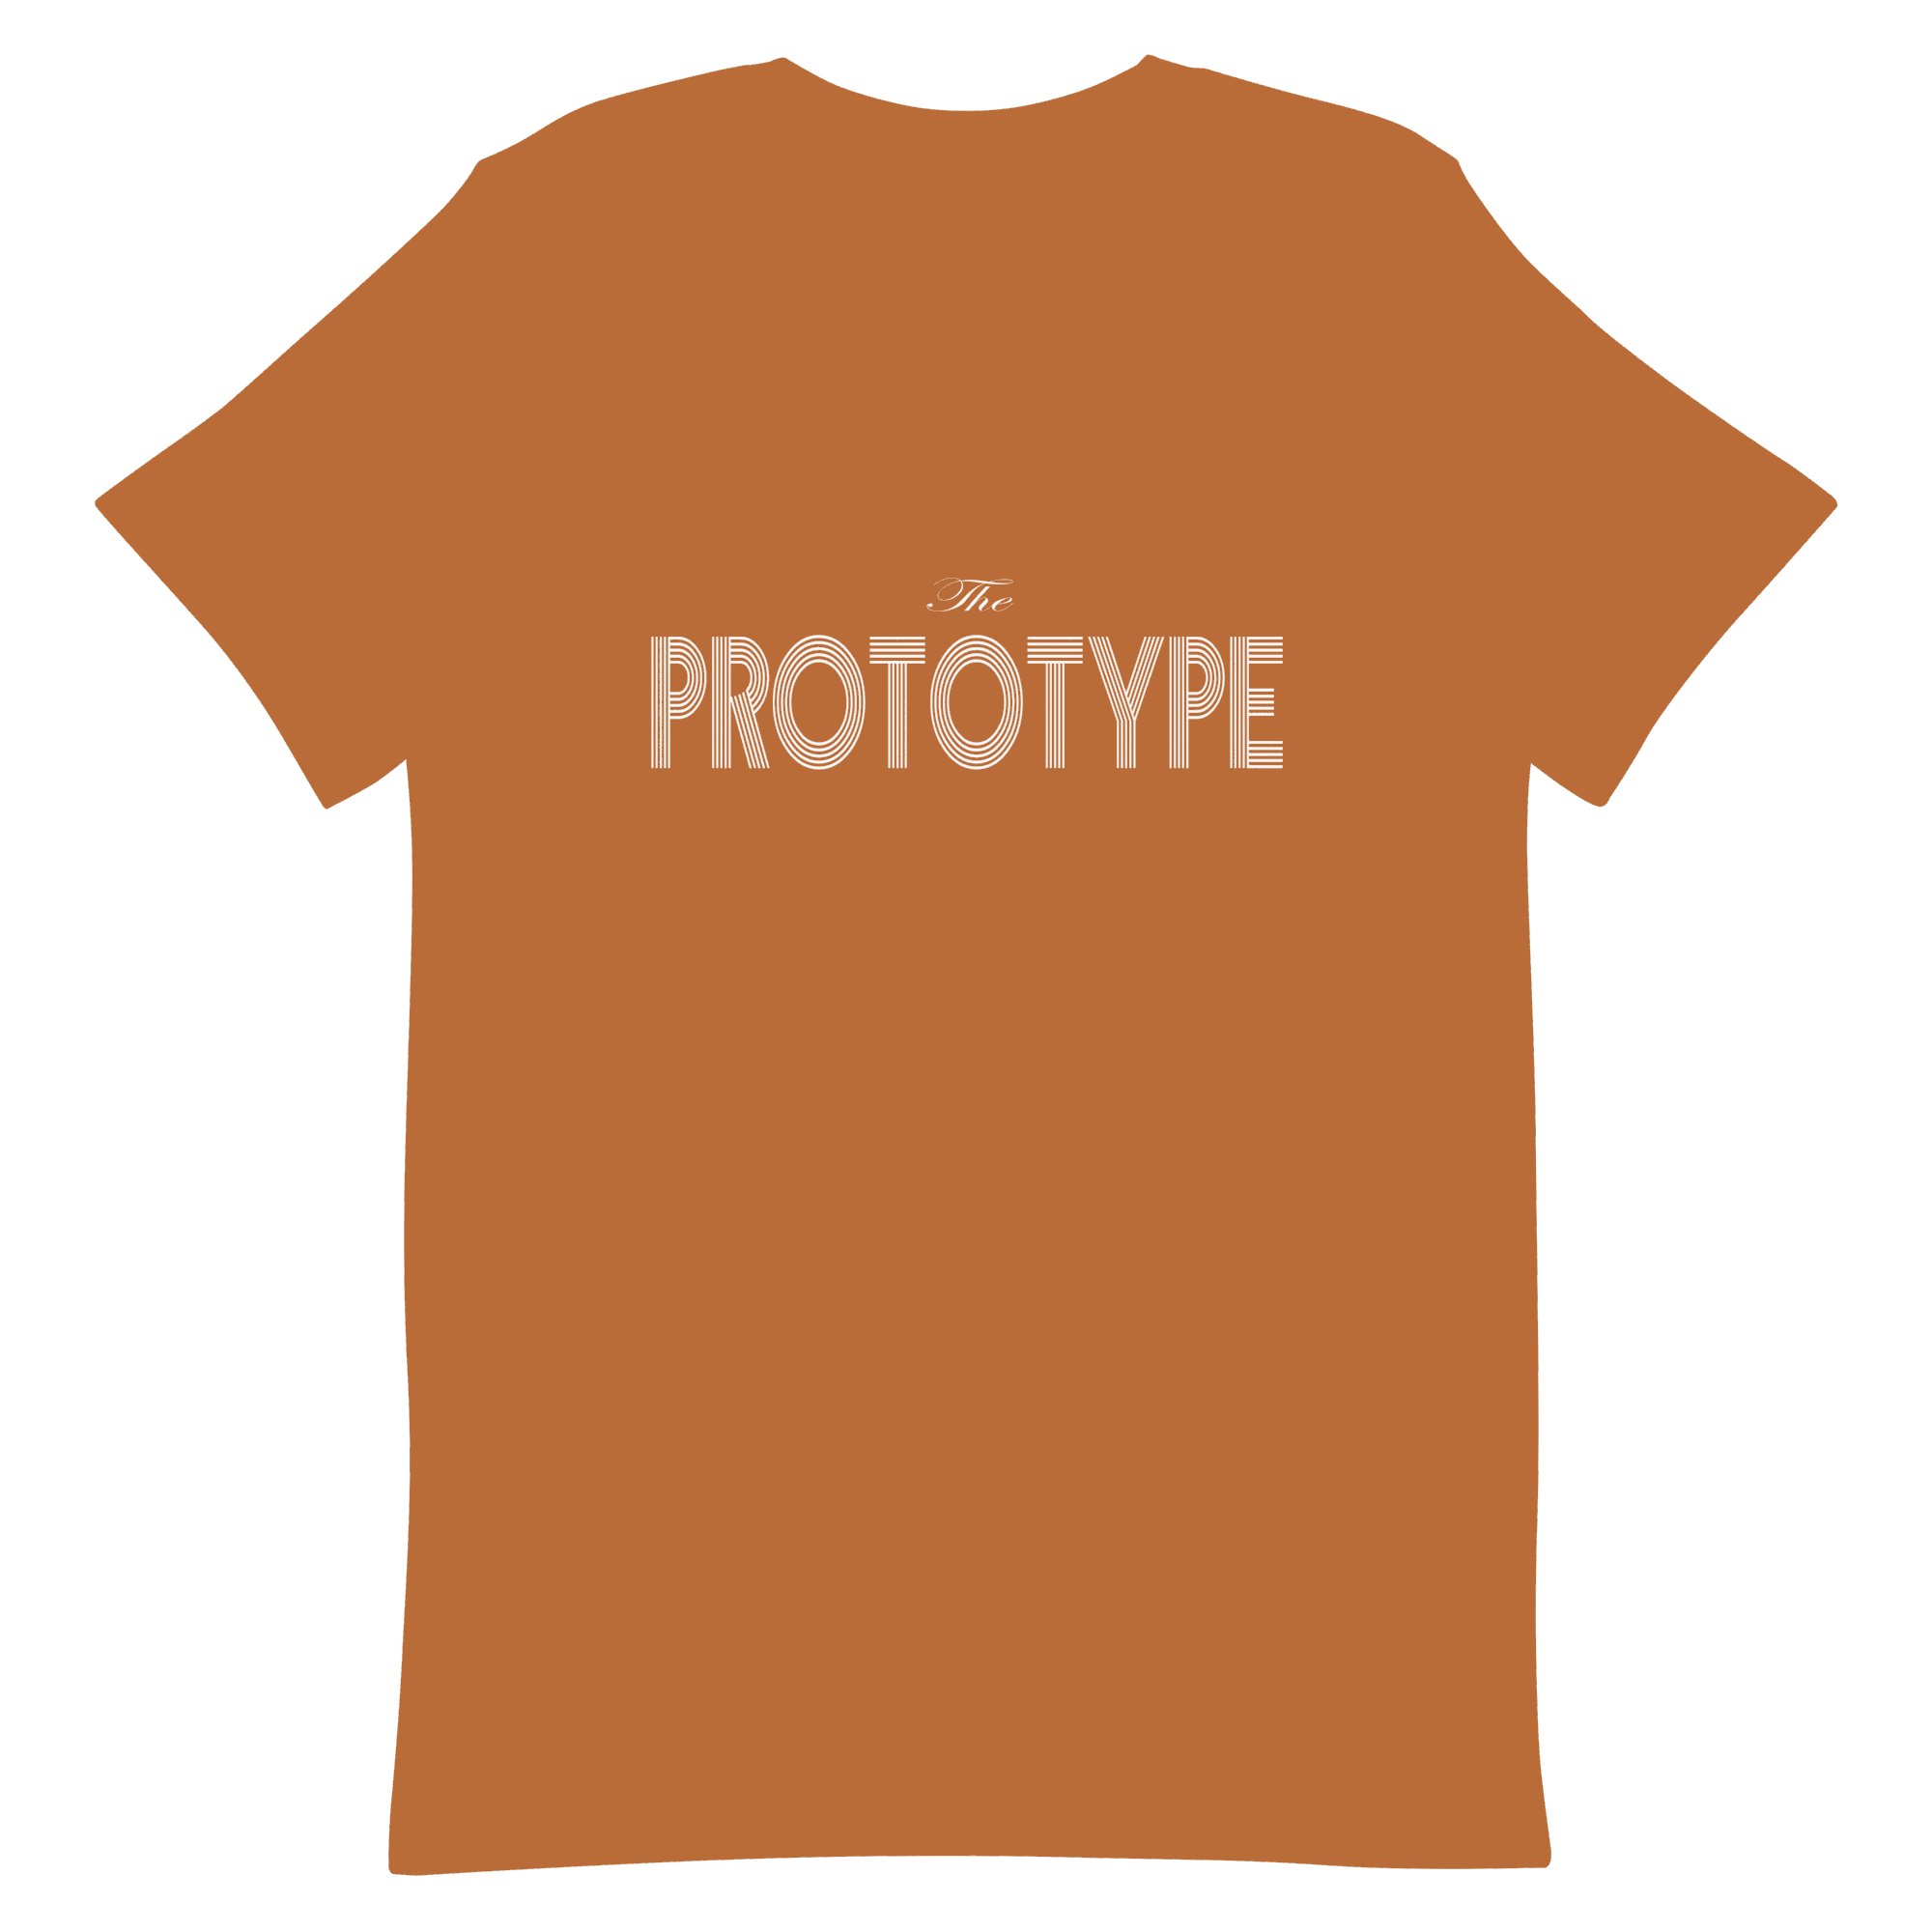 The Prototype